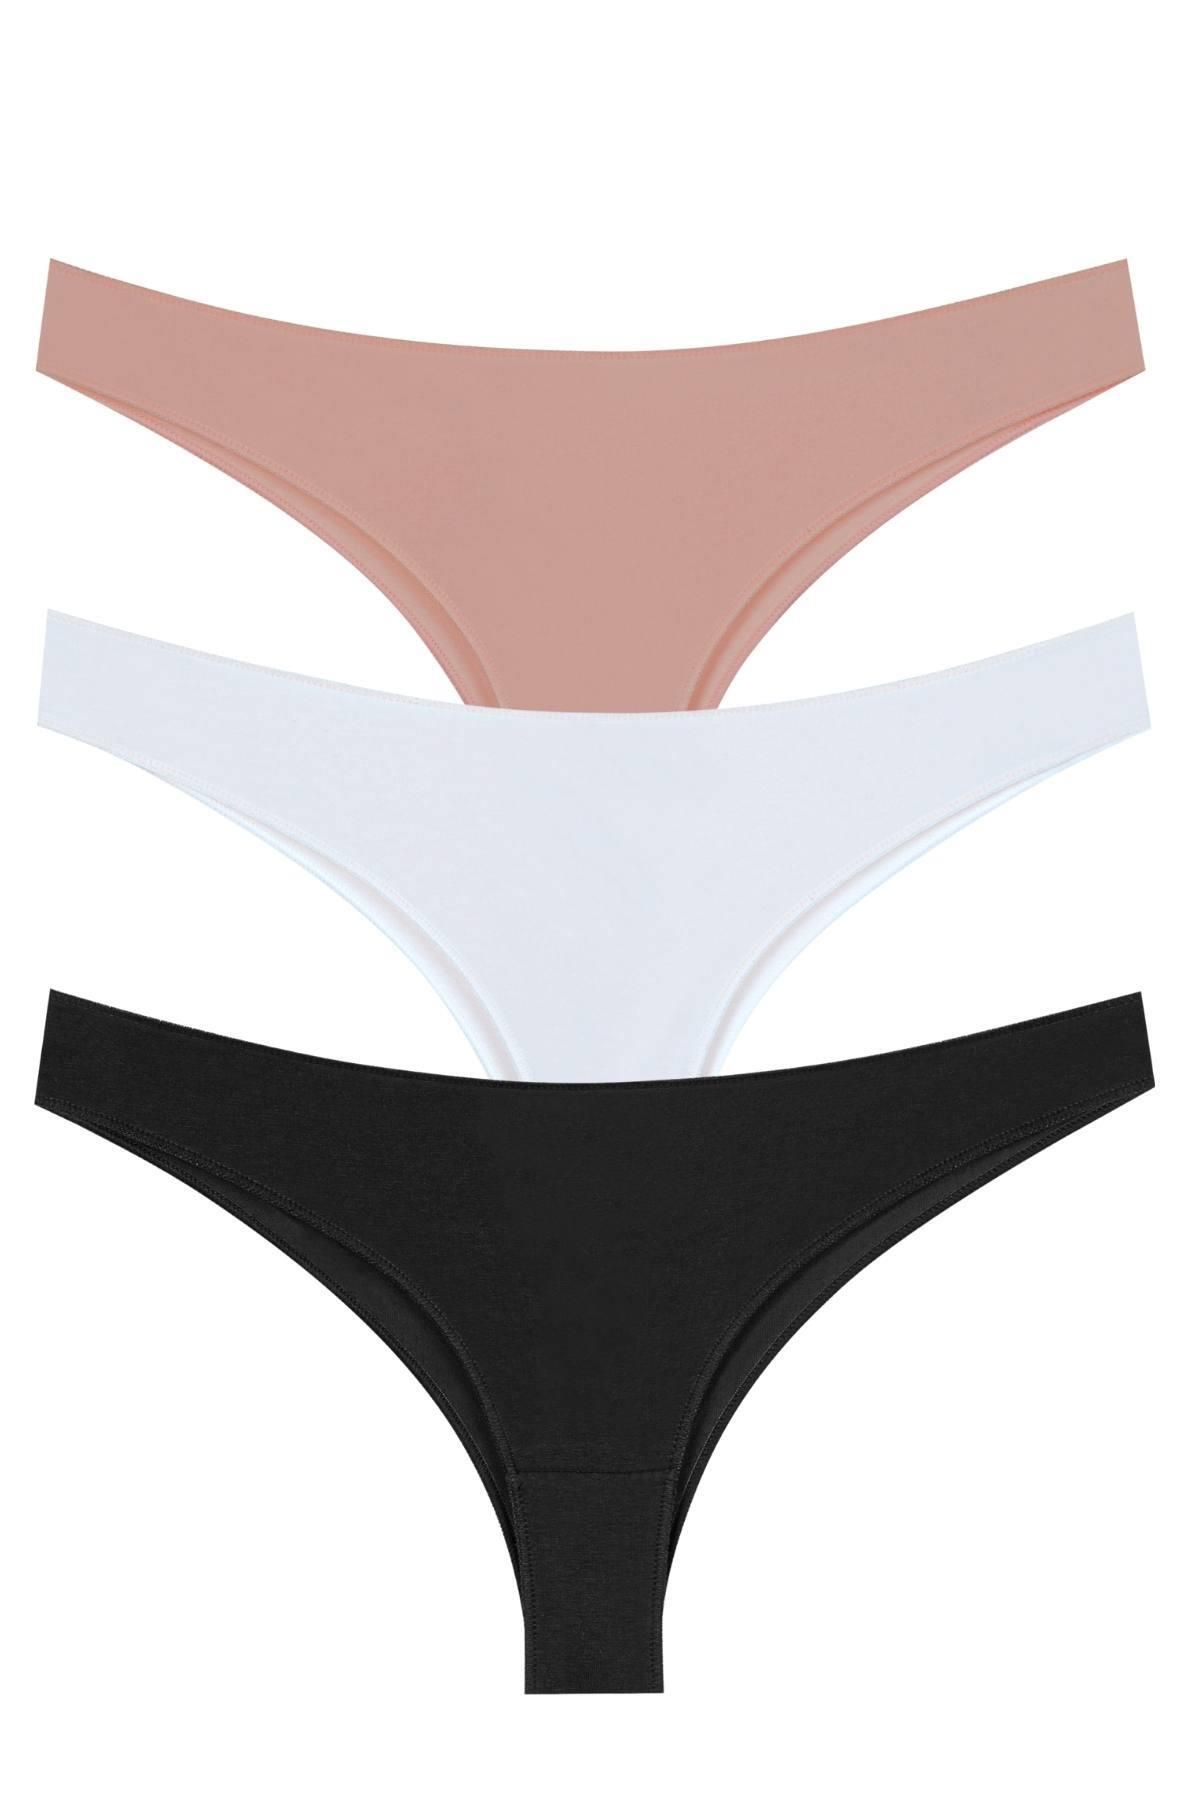 Tutku Women's Black Thermal Underwear Bottom Top Set Thermal Set